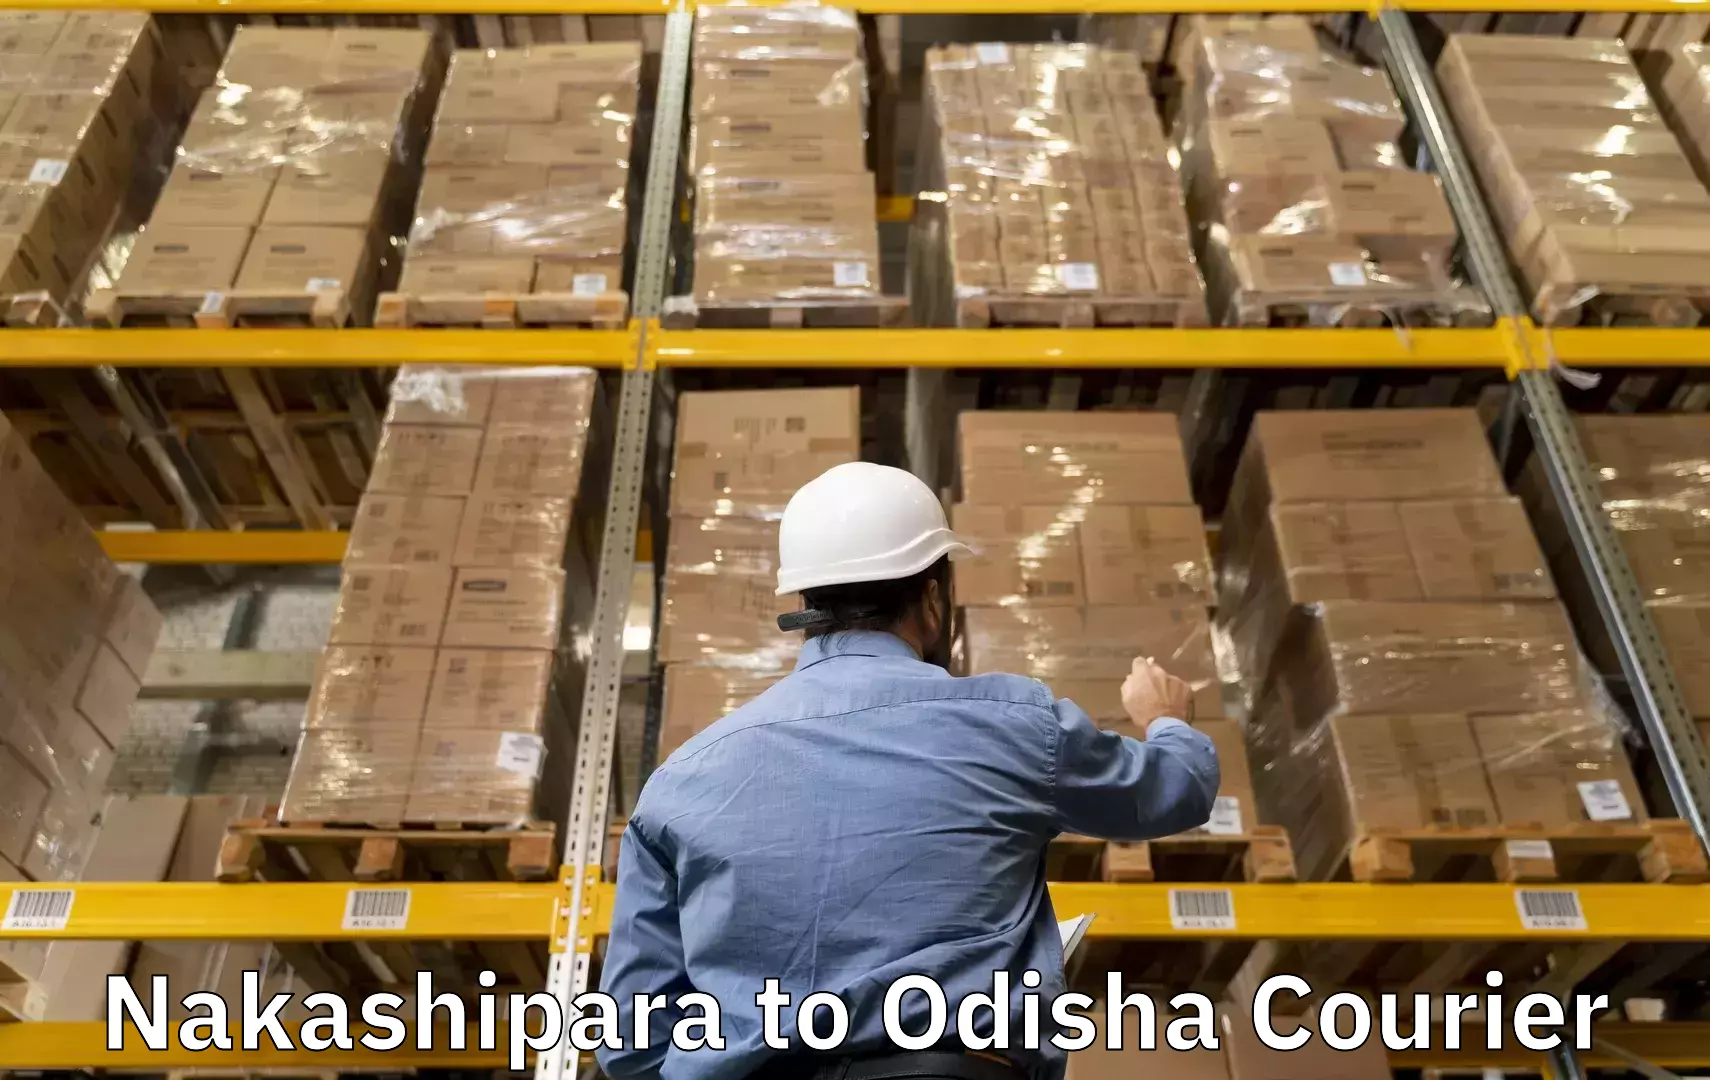 Baggage courier optimization Nakashipara to Sohela